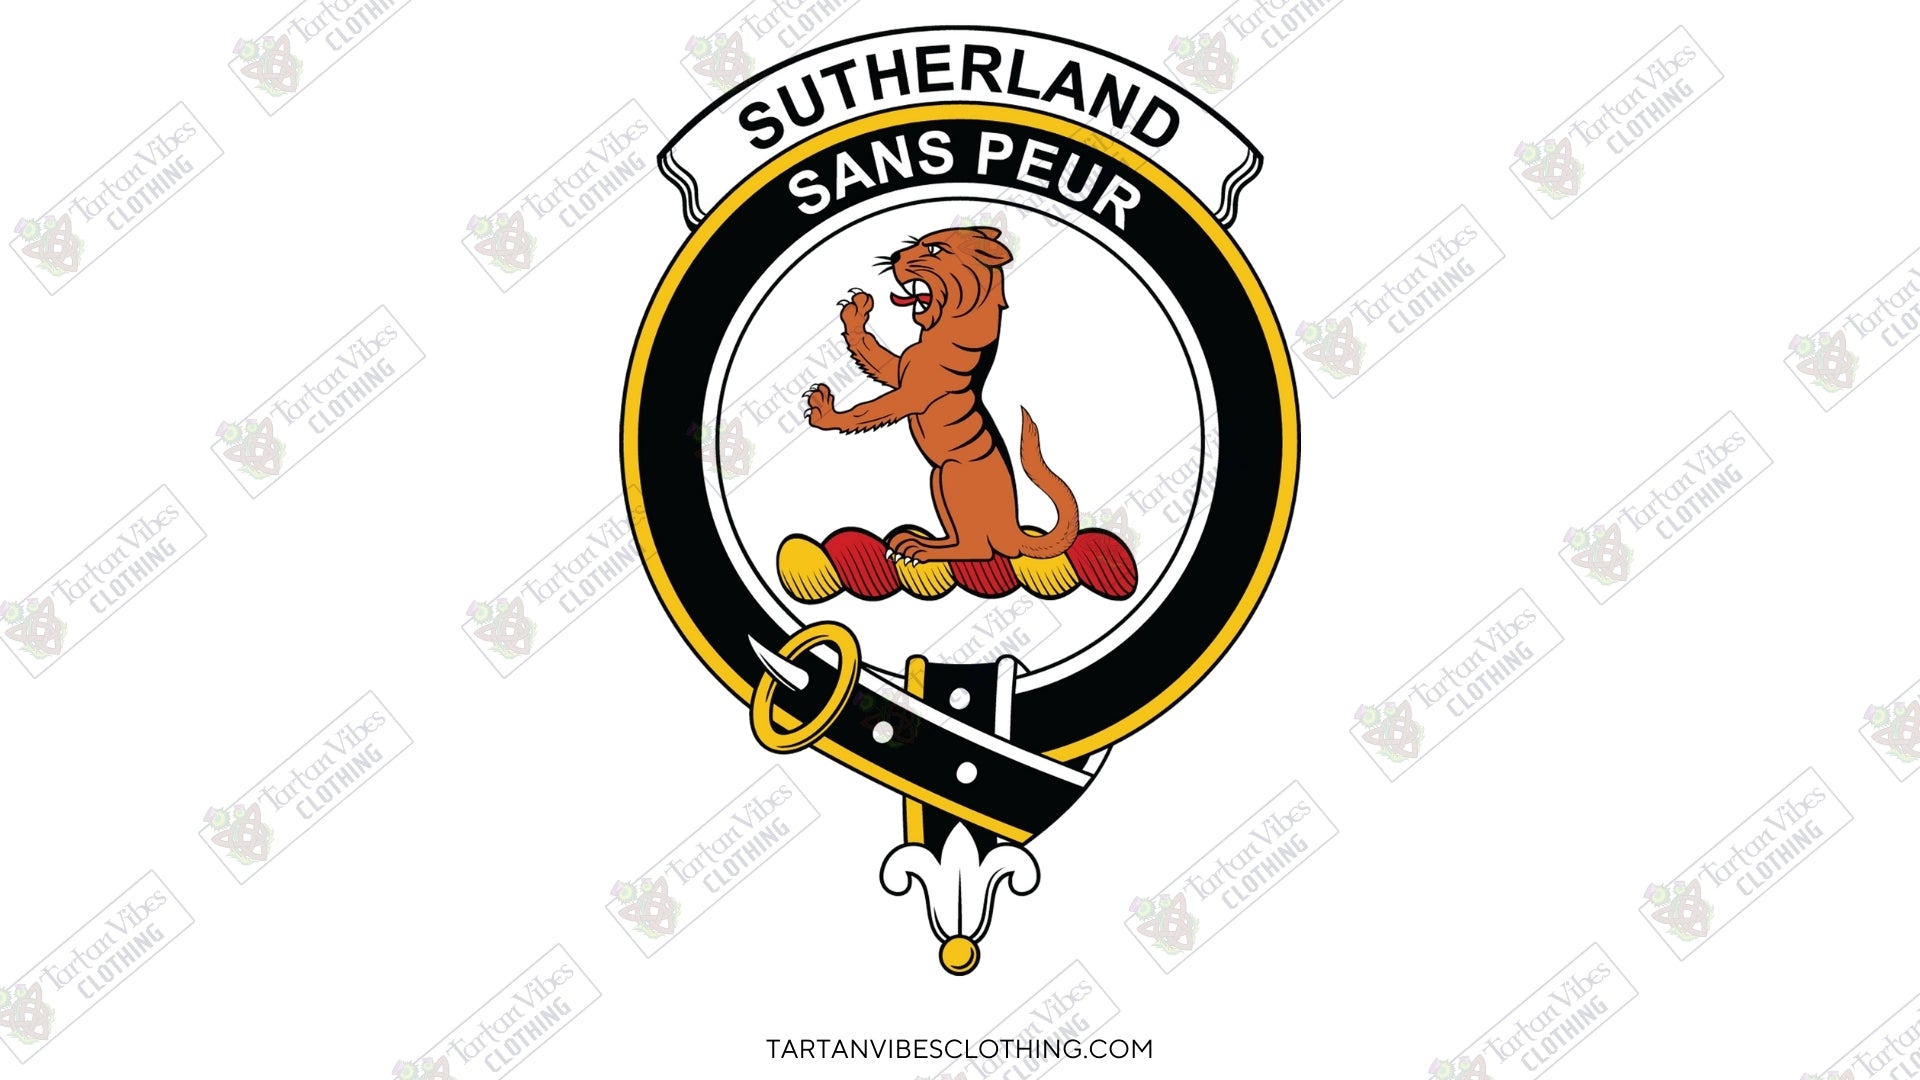 Clan Sutherland Crest